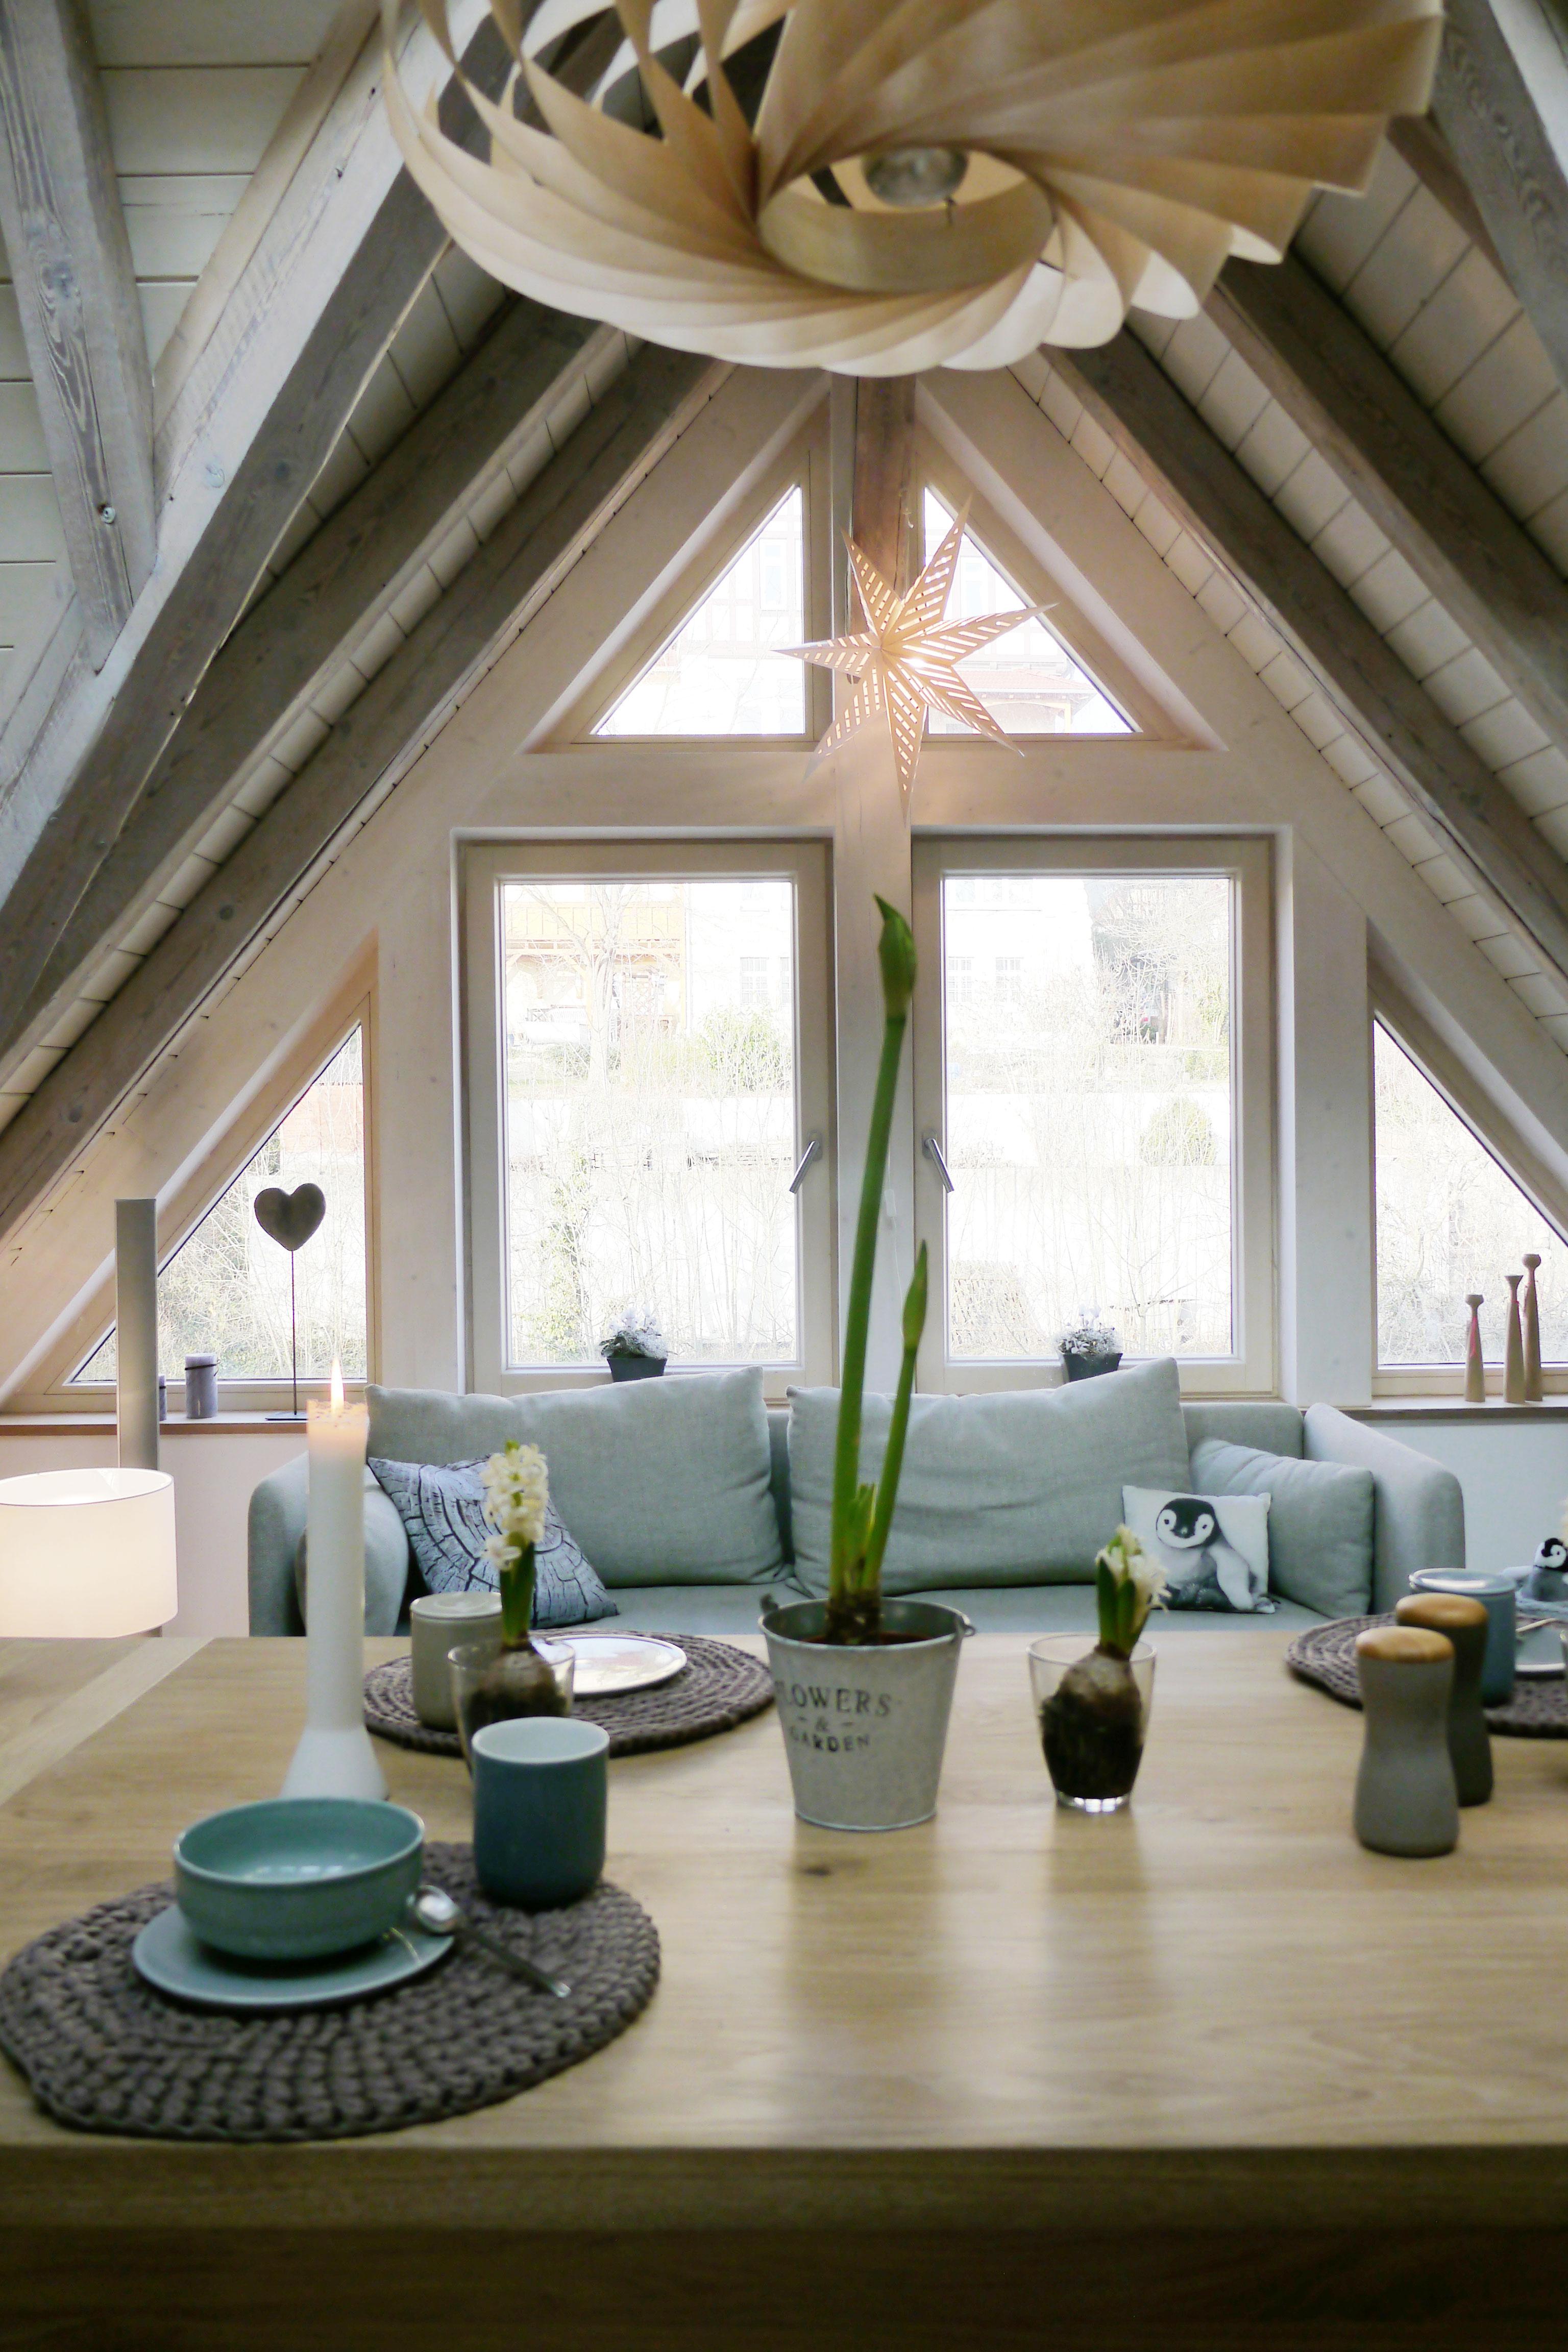 Gemütliche Couchecke und Esstisch #dachgeschoss #wohnzimmer #dachboden #pendelleuchte ©HolzDesignPur